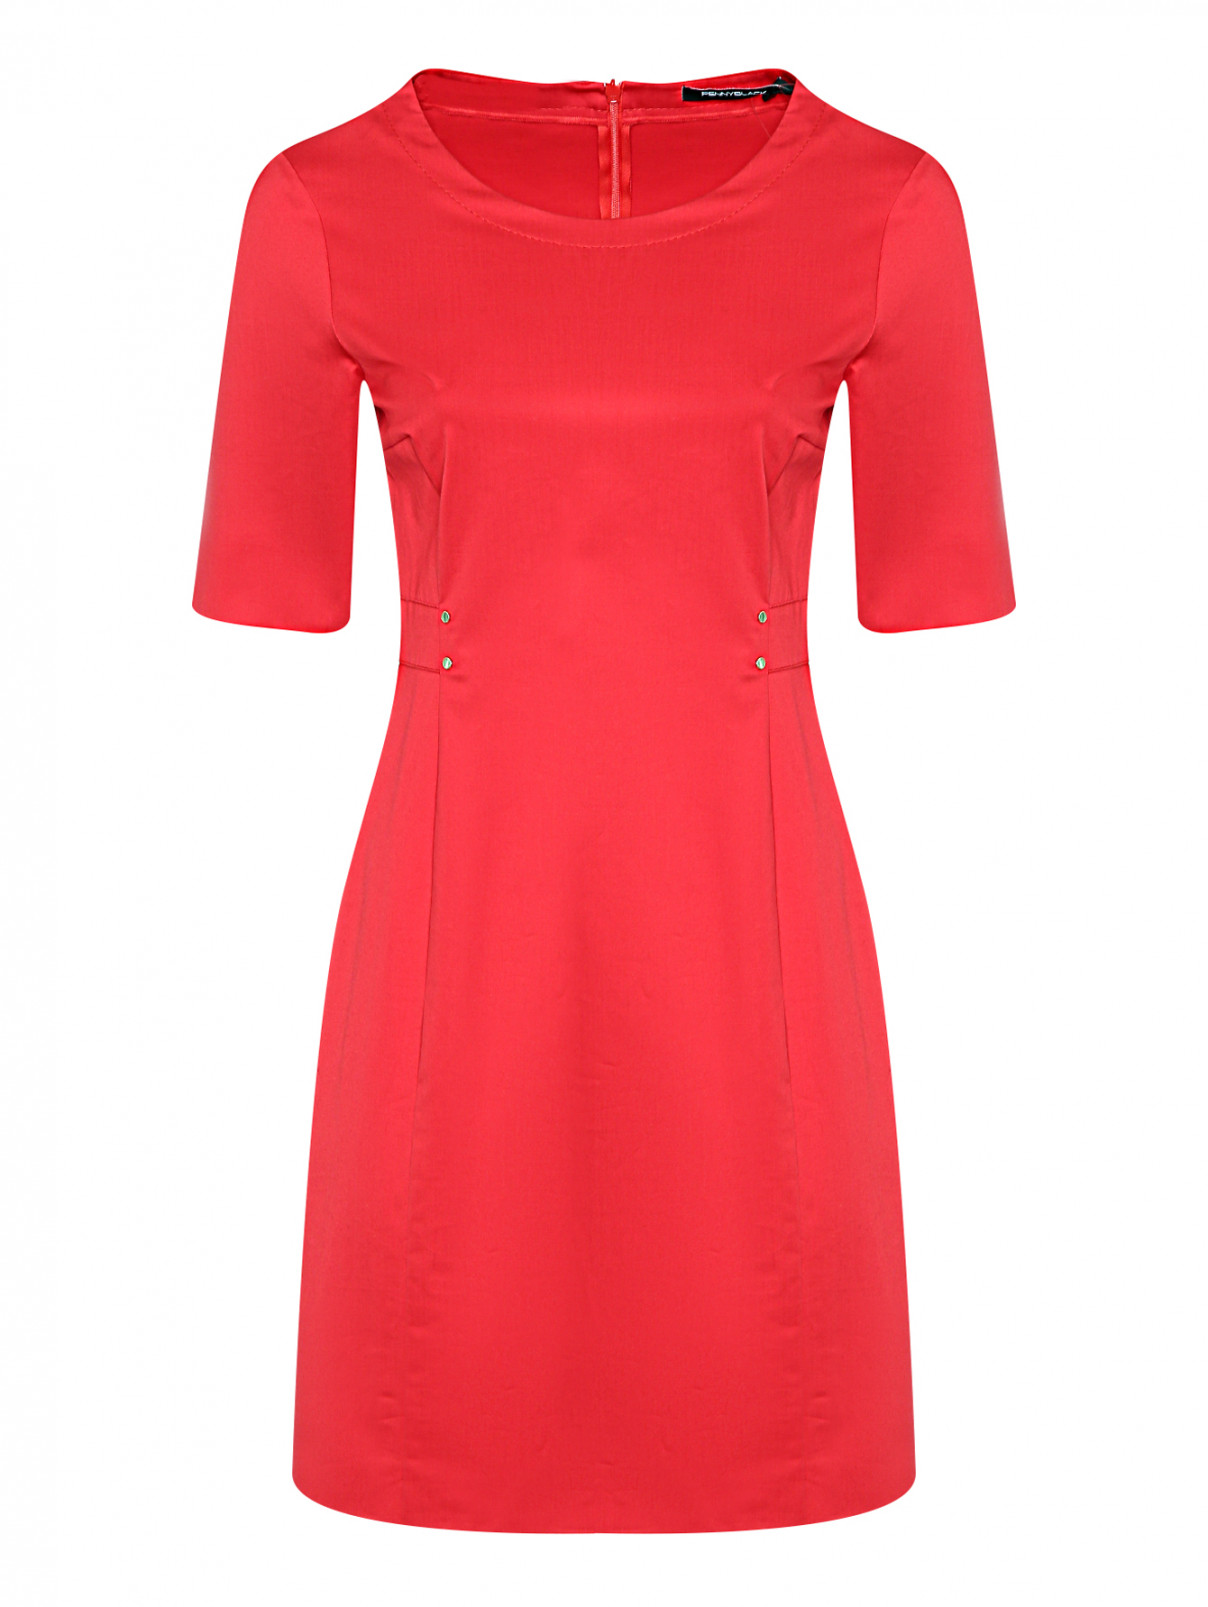 Платье из хлопка с короткими рукавами PennyBlack  –  Общий вид  – Цвет:  Красный